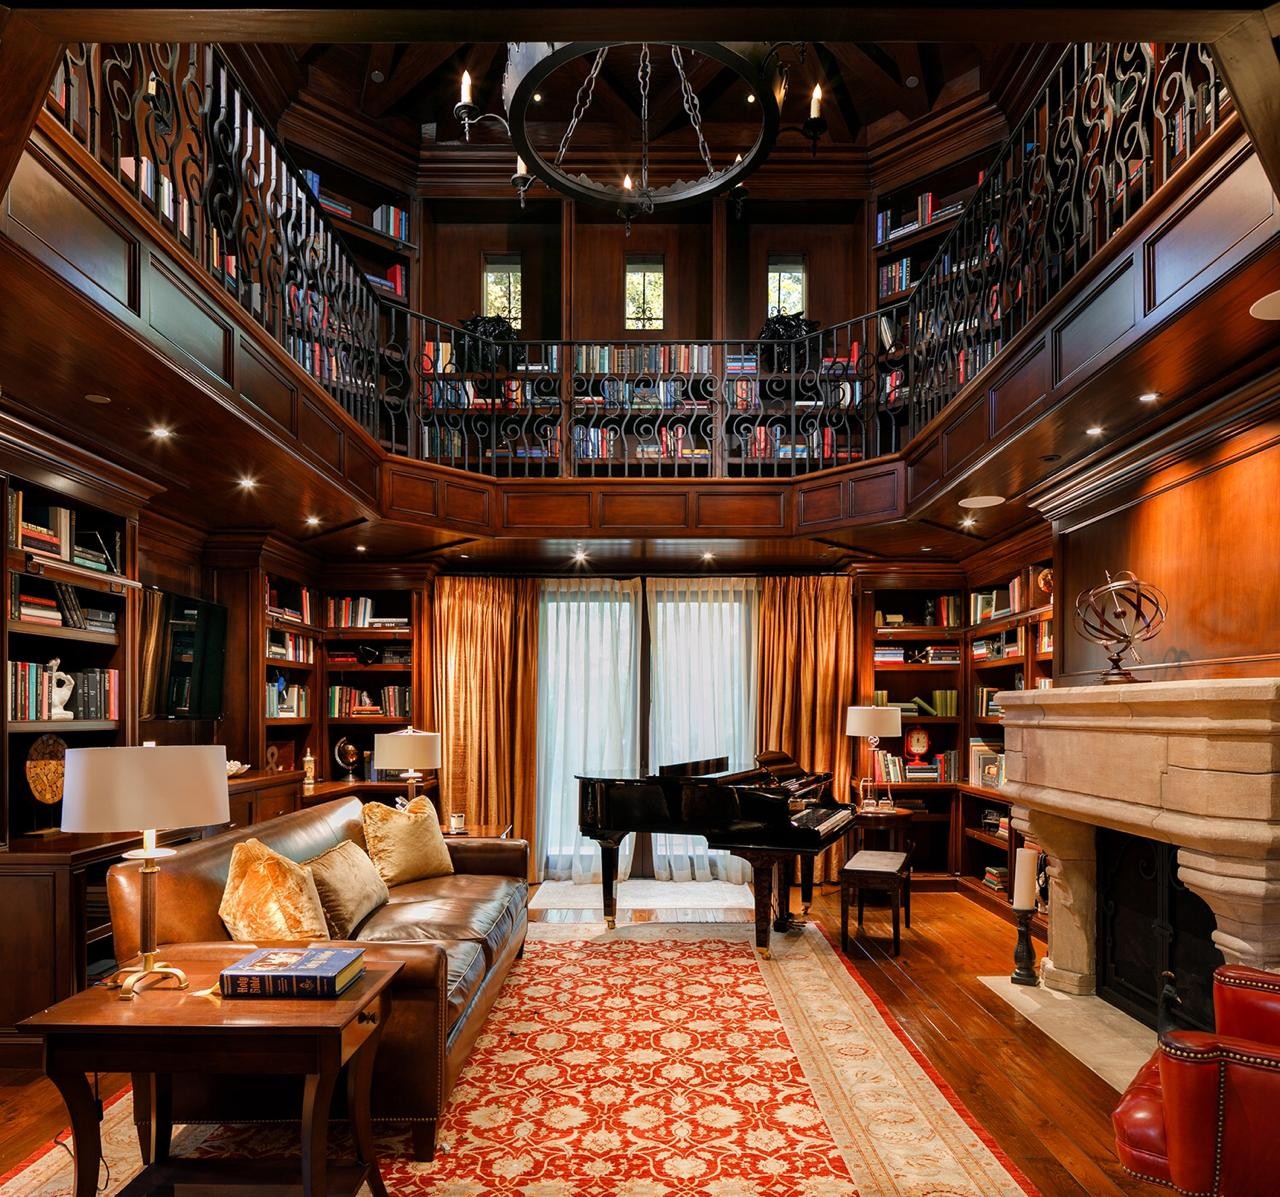 Liam Payne coloca mansão de R$55 milhões a venda, veja fotos (Foto: Divulgação)